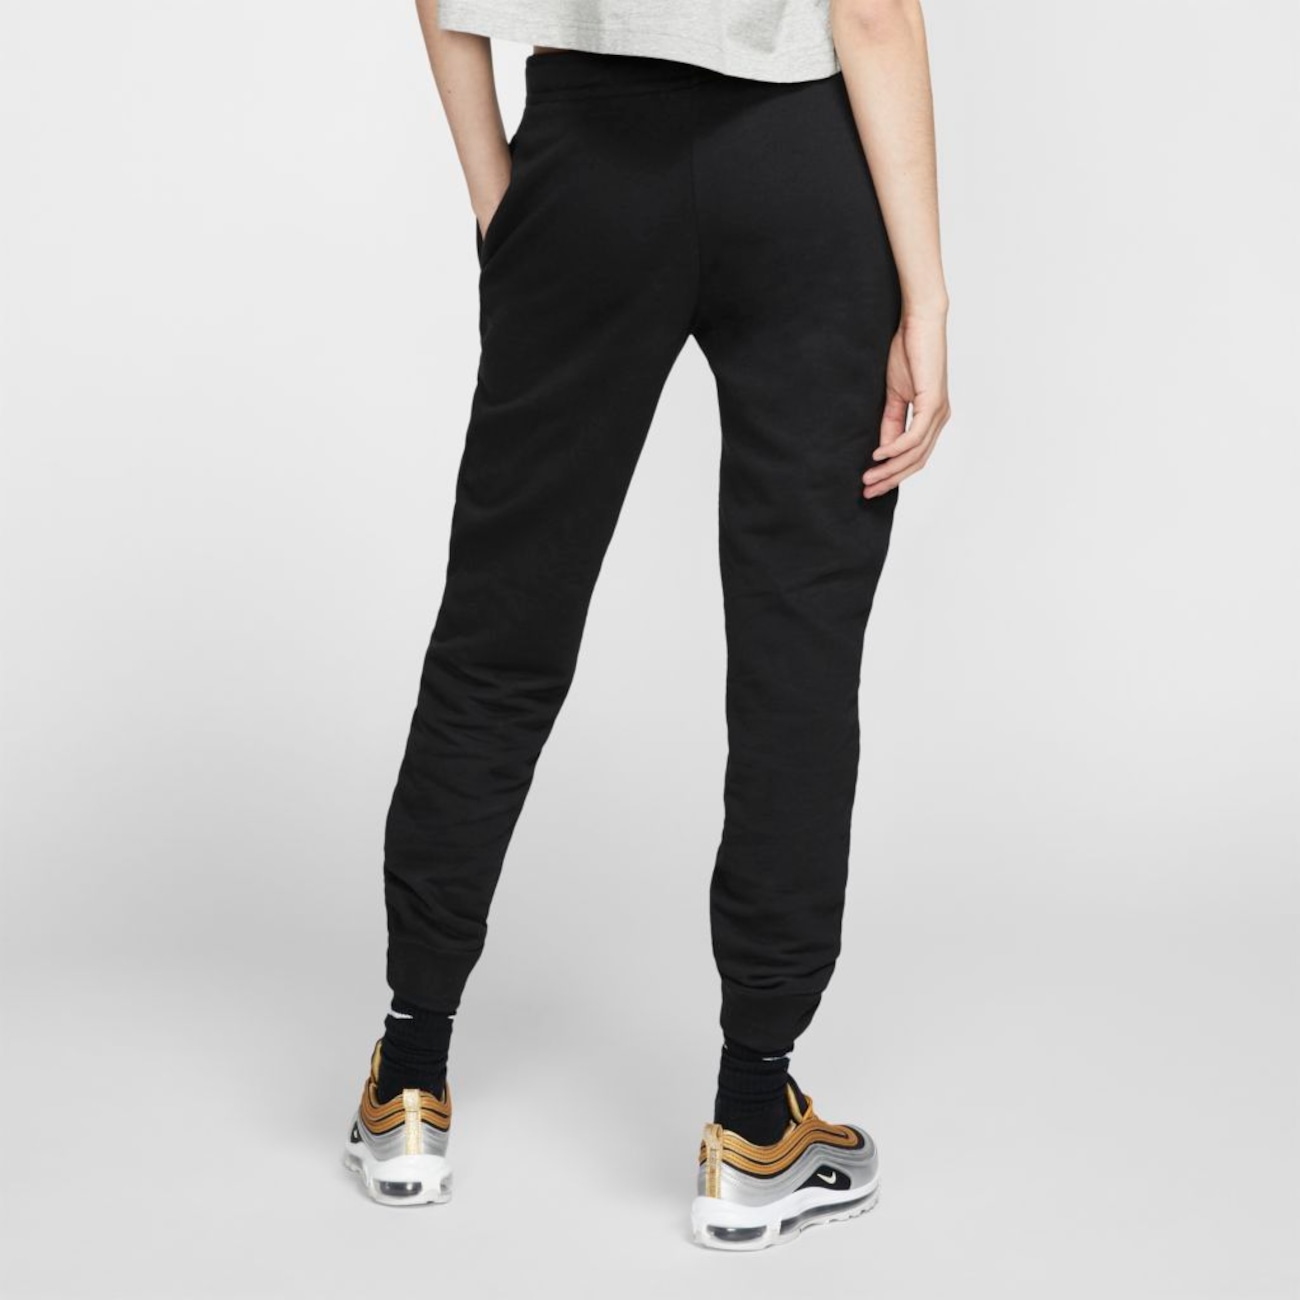 Calça Nike Sportswear Essential Feminina - Foto 2